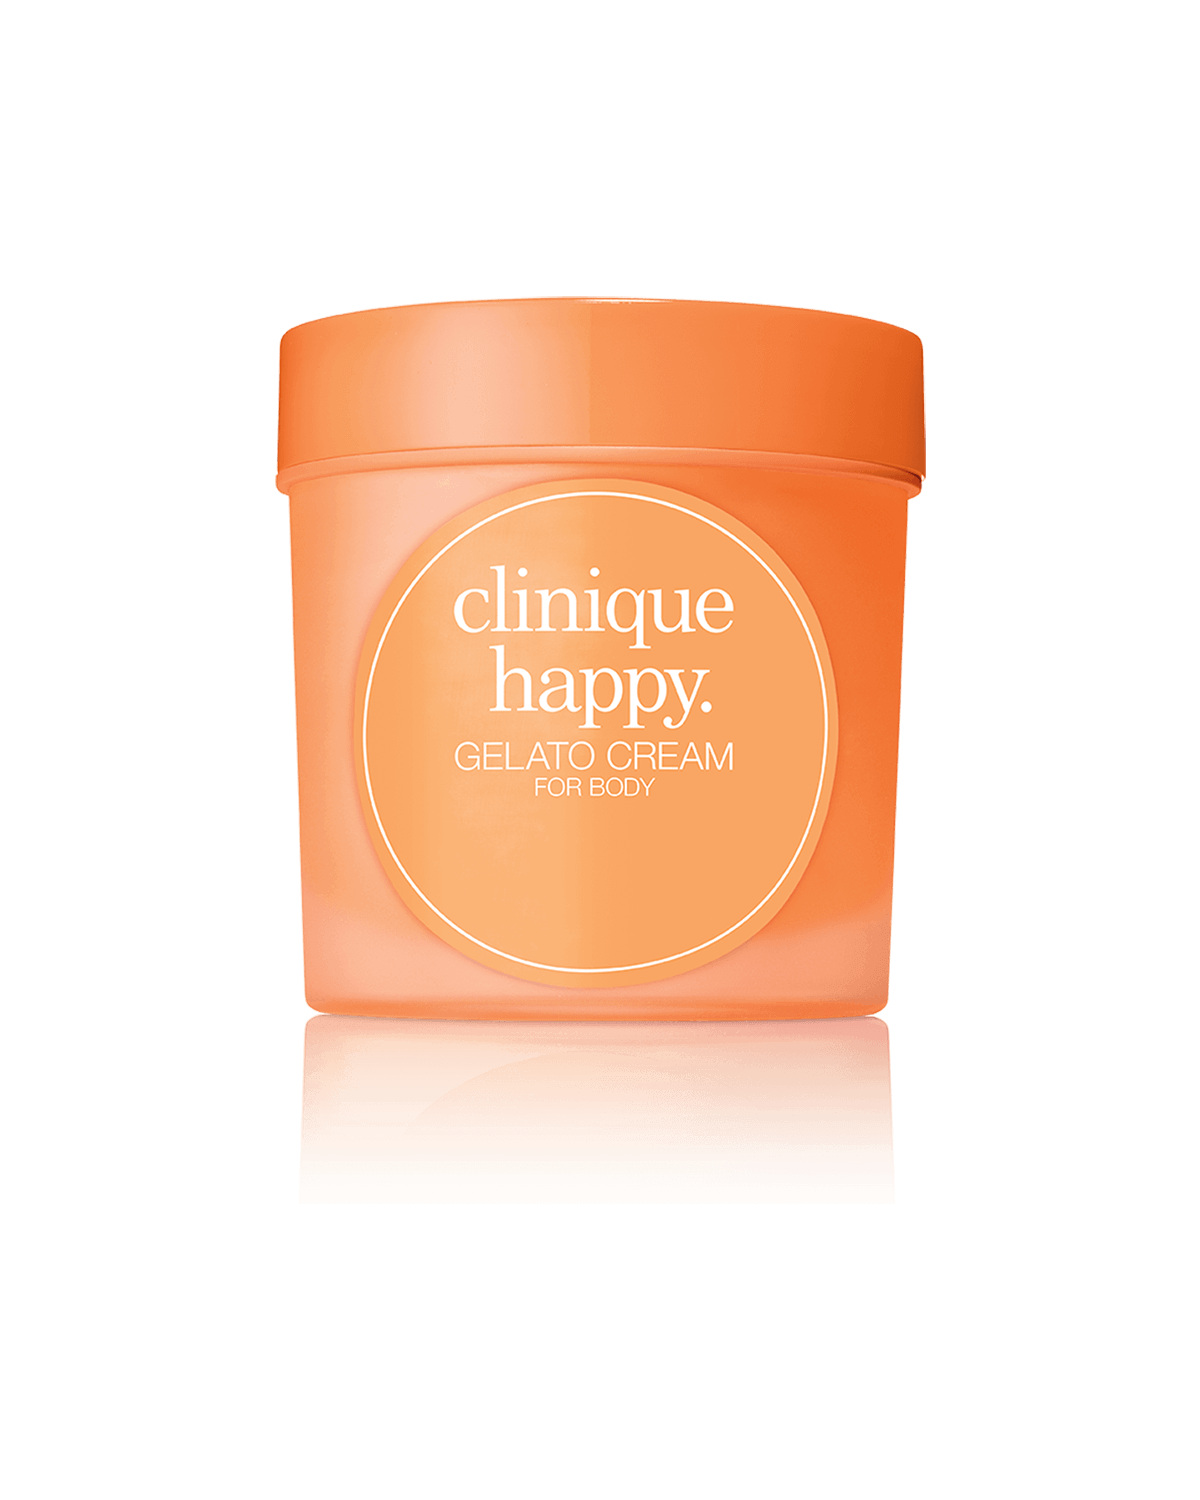 FREE FULL SIZE: Clinique Happy™ Gelato Cream For Body in Clinique Happy